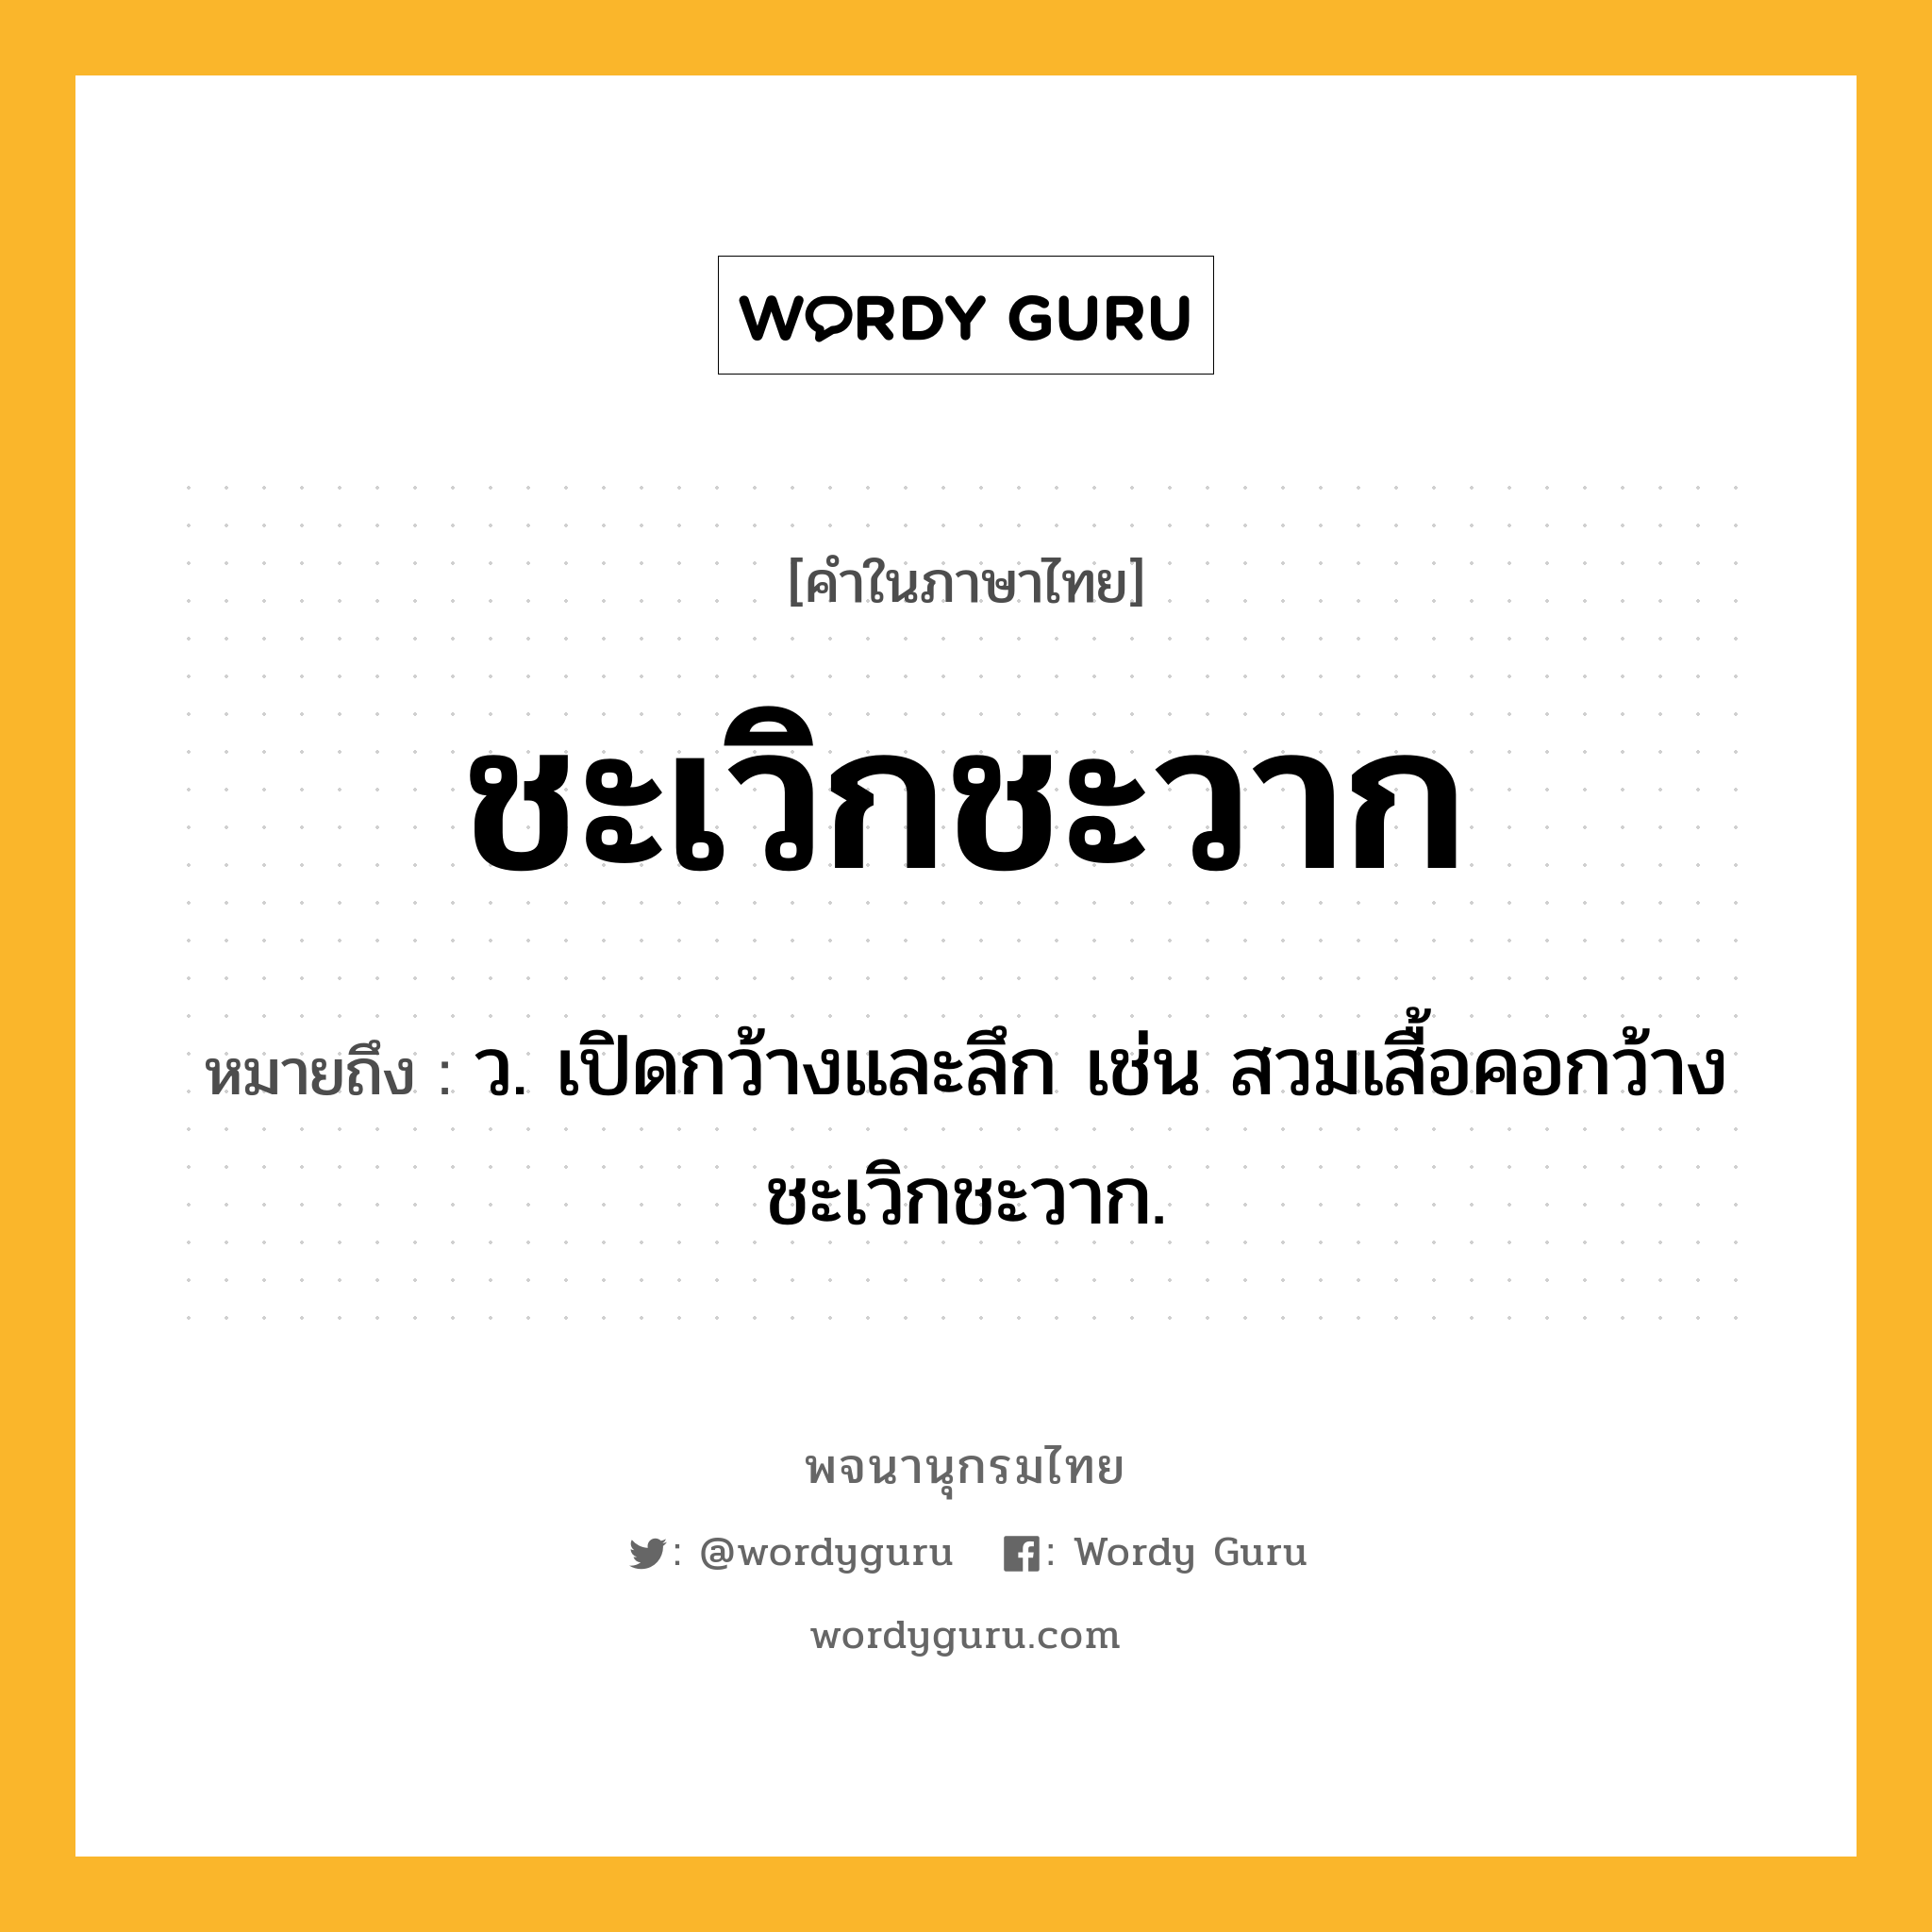 ชะเวิกชะวาก หมายถึงอะไร?, คำในภาษาไทย ชะเวิกชะวาก หมายถึง ว. เปิดกว้างและลึก เช่น สวมเสื้อคอกว้างชะเวิกชะวาก.